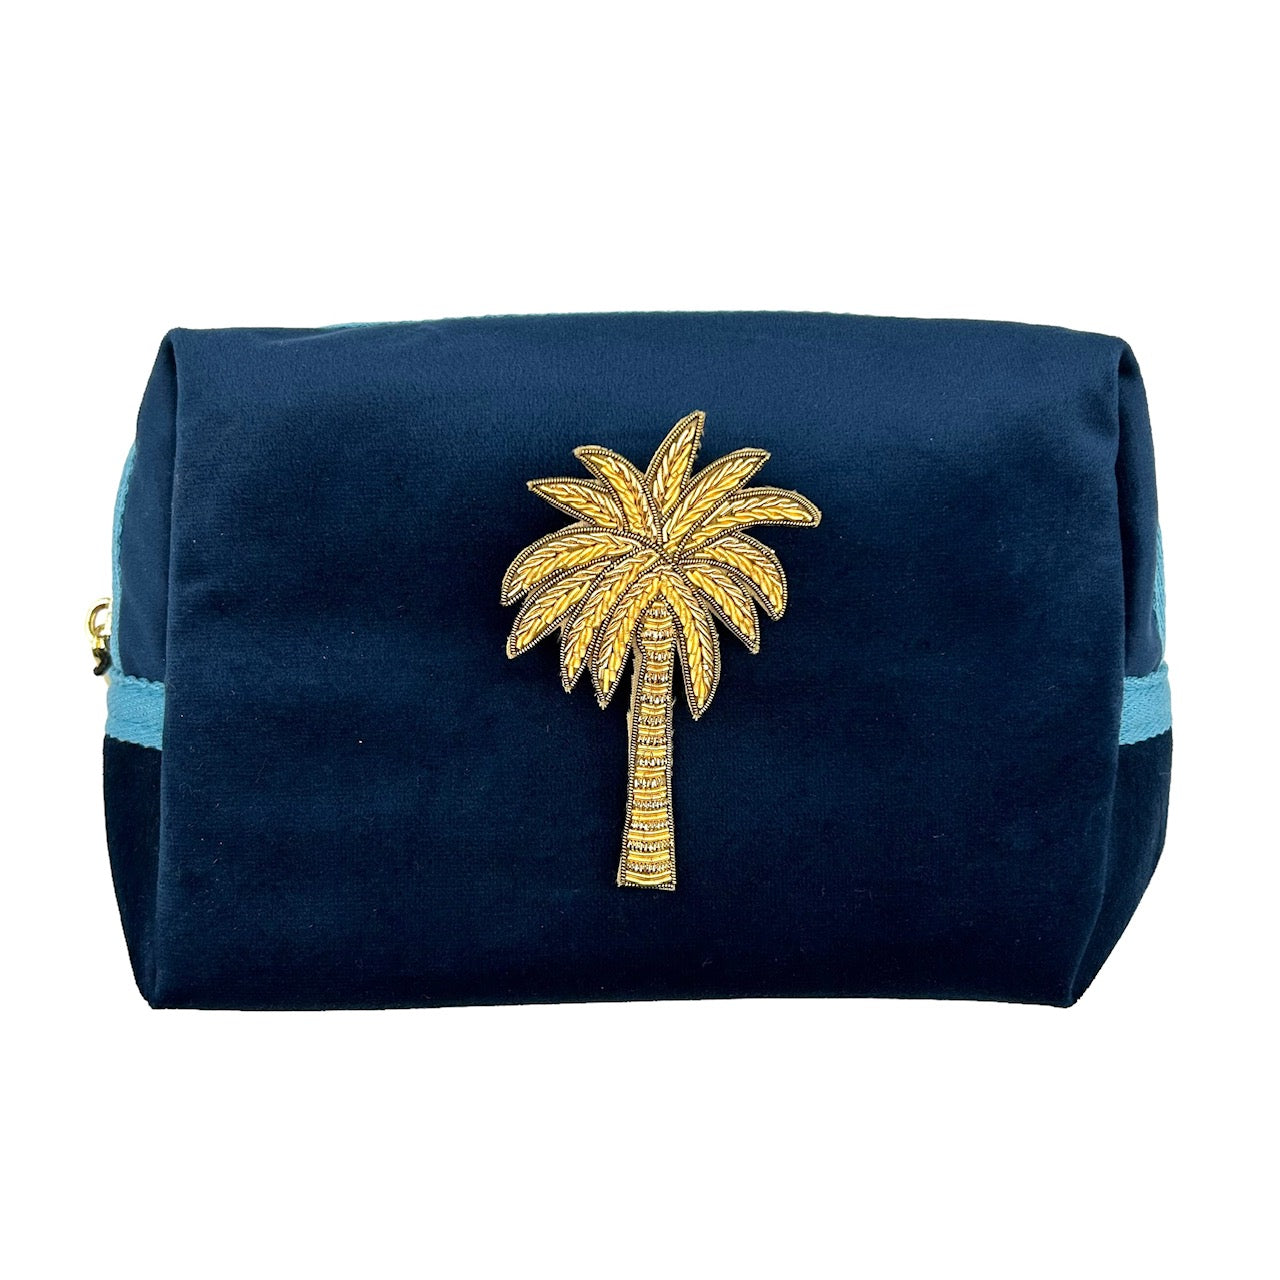 Blue make-up bag & gold palm tree - recycled velvet